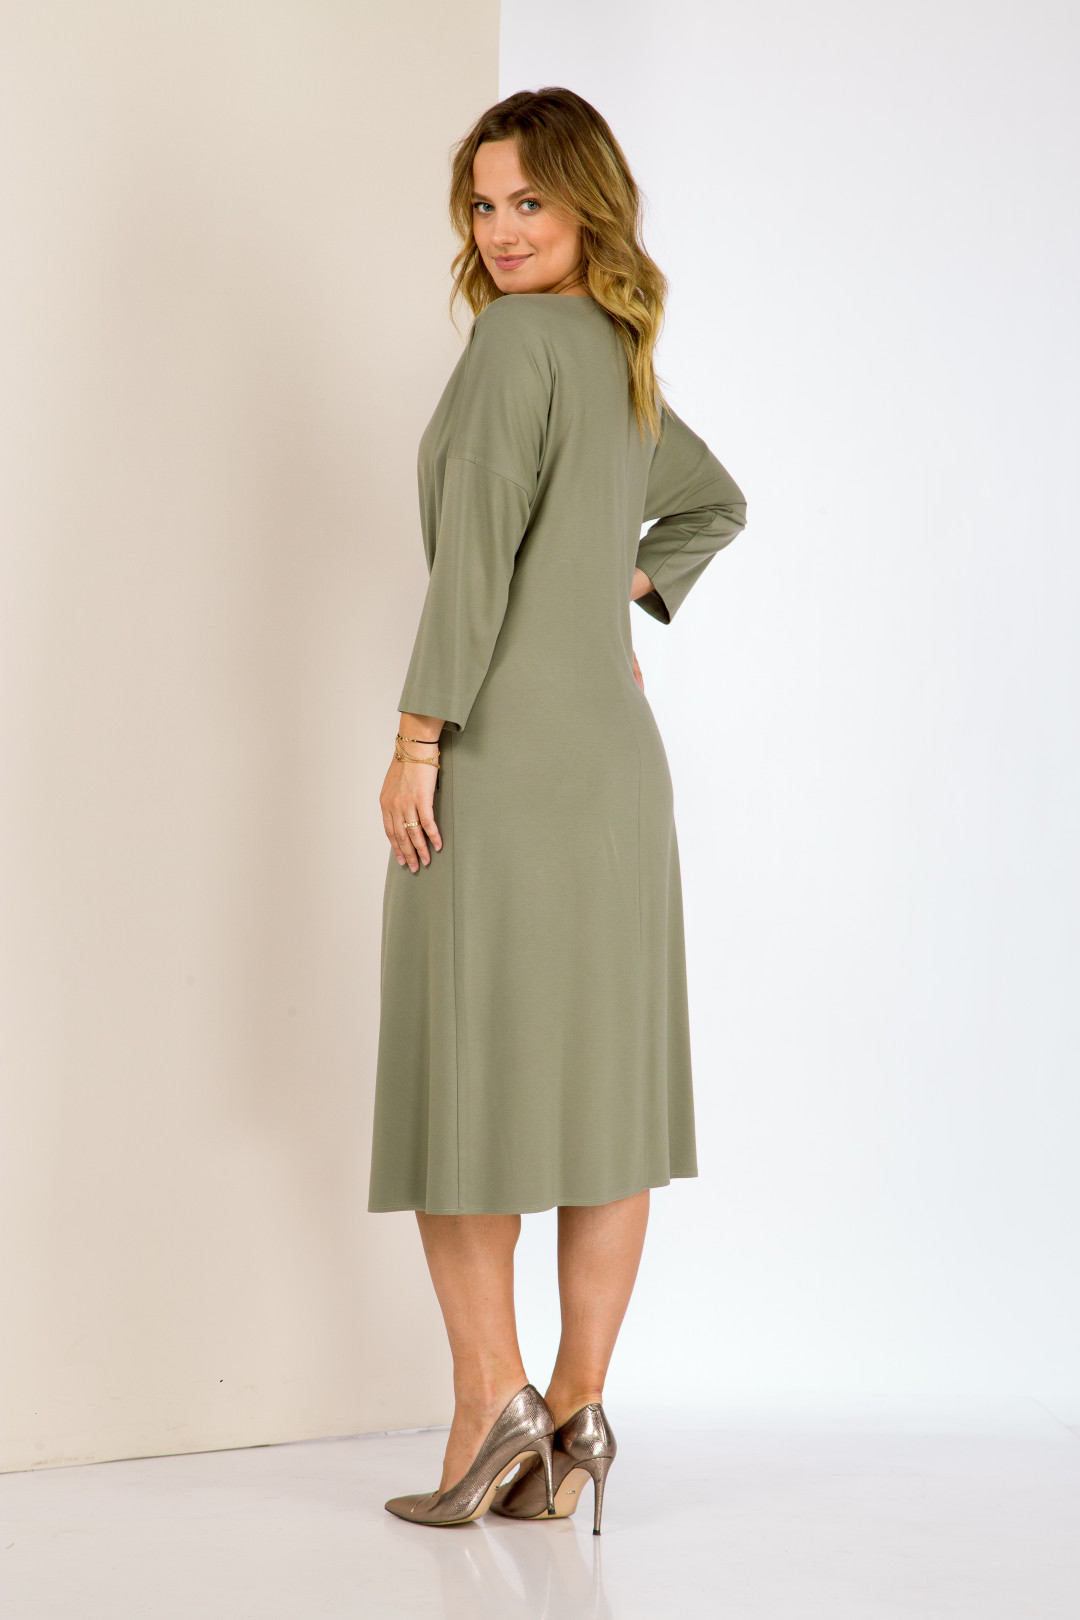 Платье Карина Делюкс В-314-1 оливковый